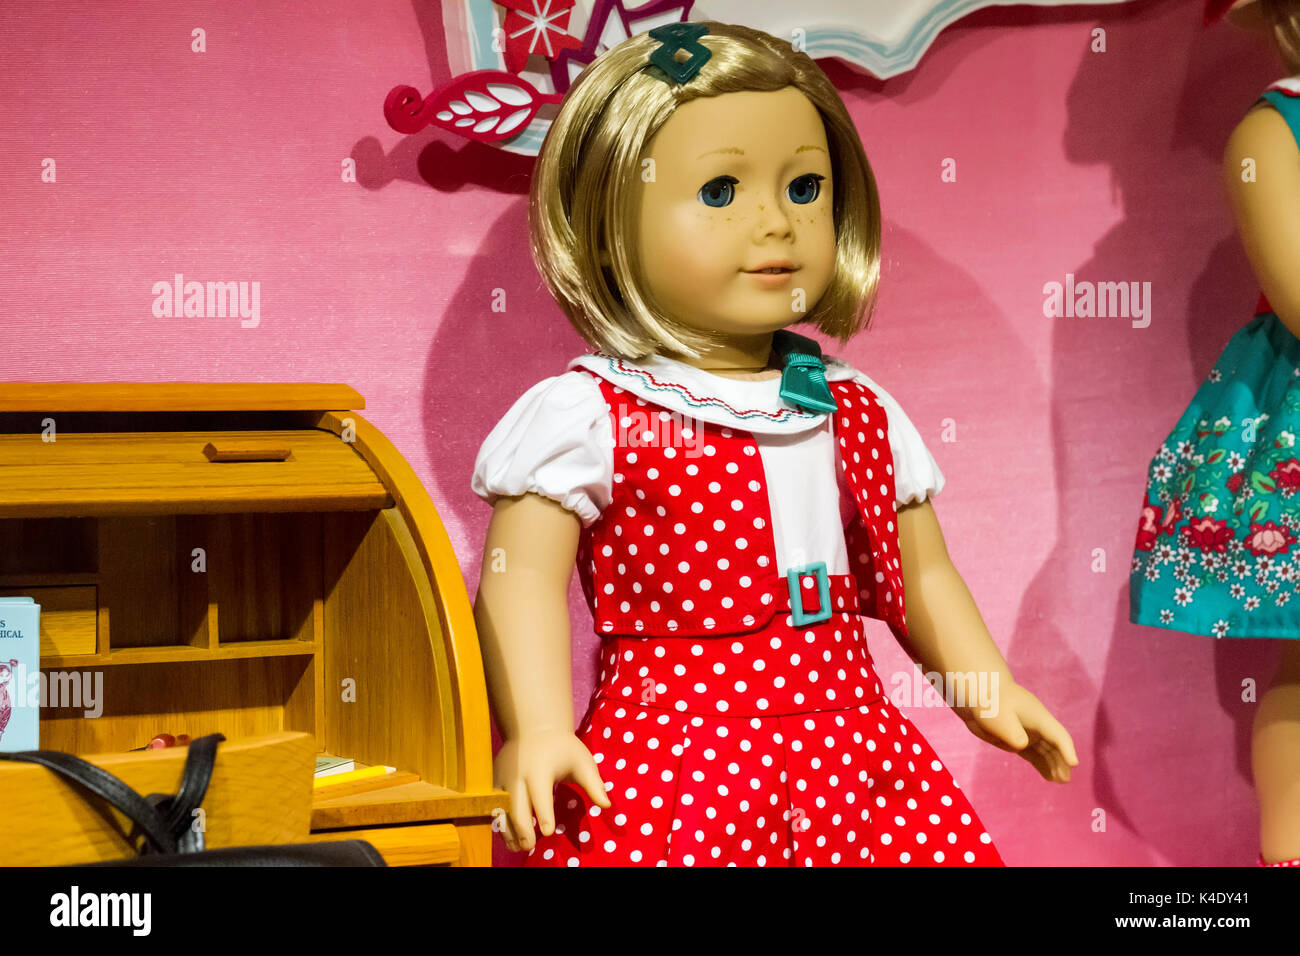 New York City - Novembre 19, 2015: Bambole in American Girl Place store in New York City. American Girl Place è un negozio che vende American Girl Foto Stock